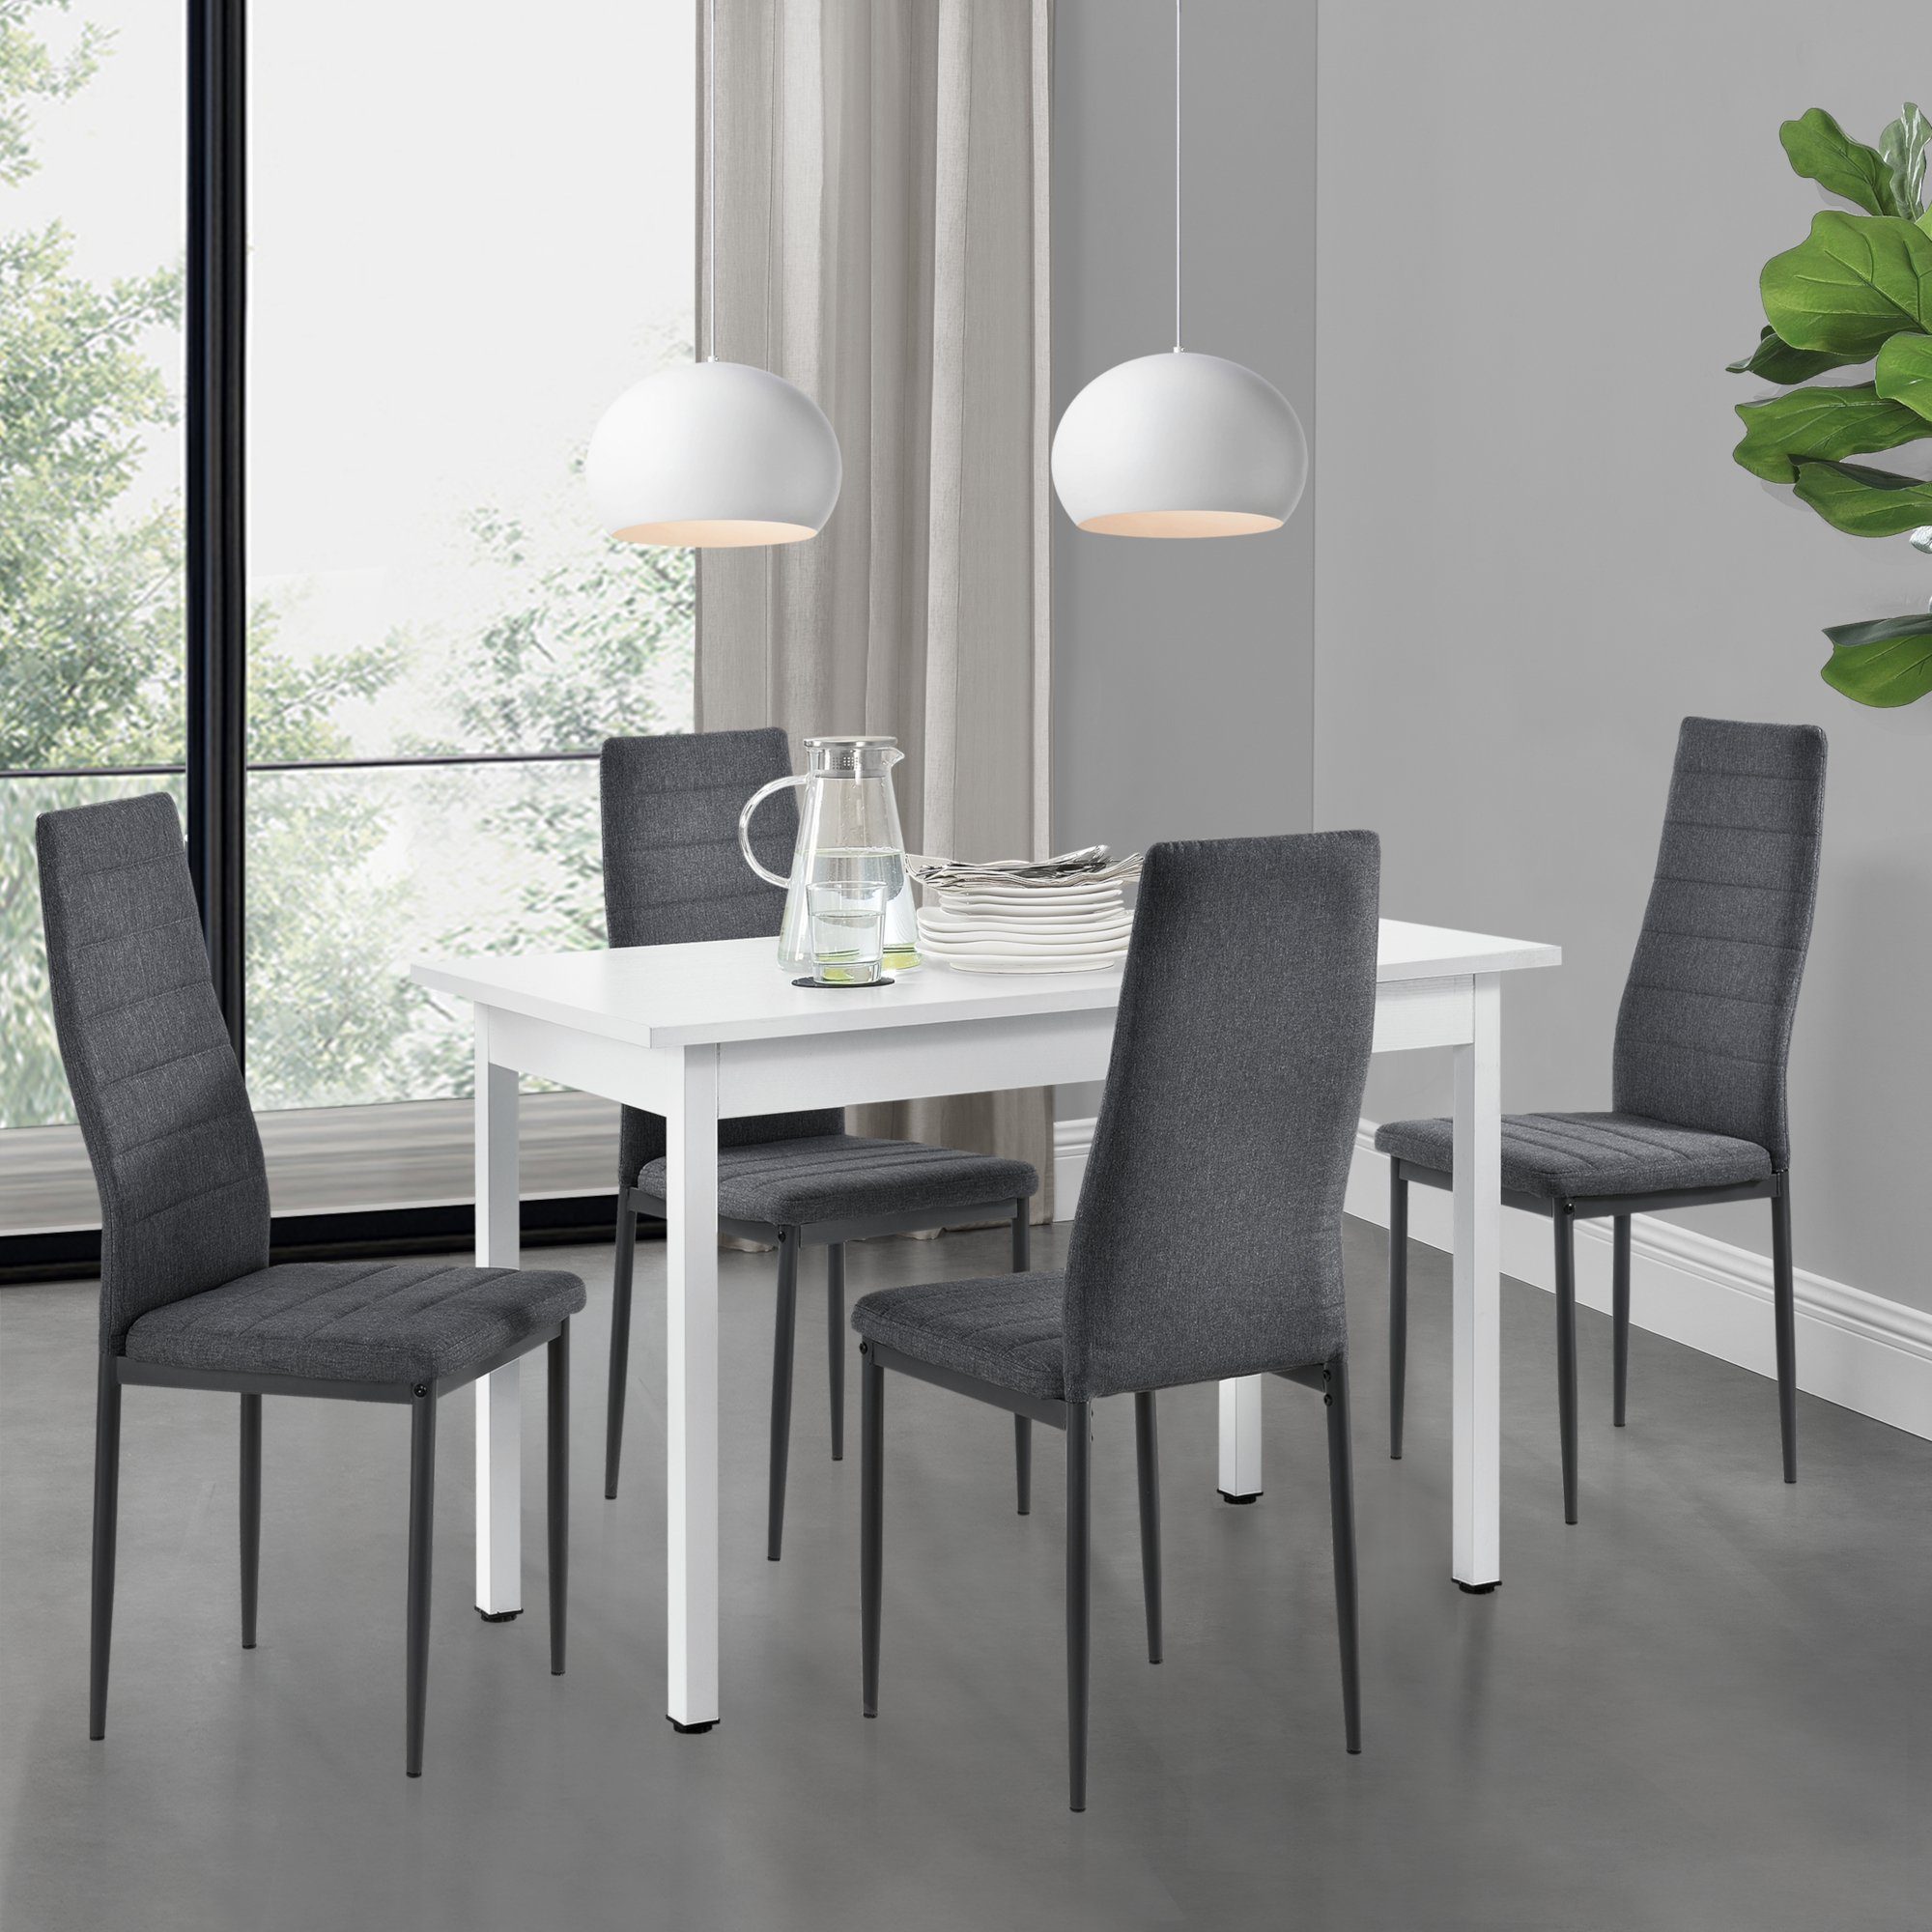 Esstisch mit 4 Stühlen weiß Küchentisch Esszimmertisch Glas Tisch en.casa 